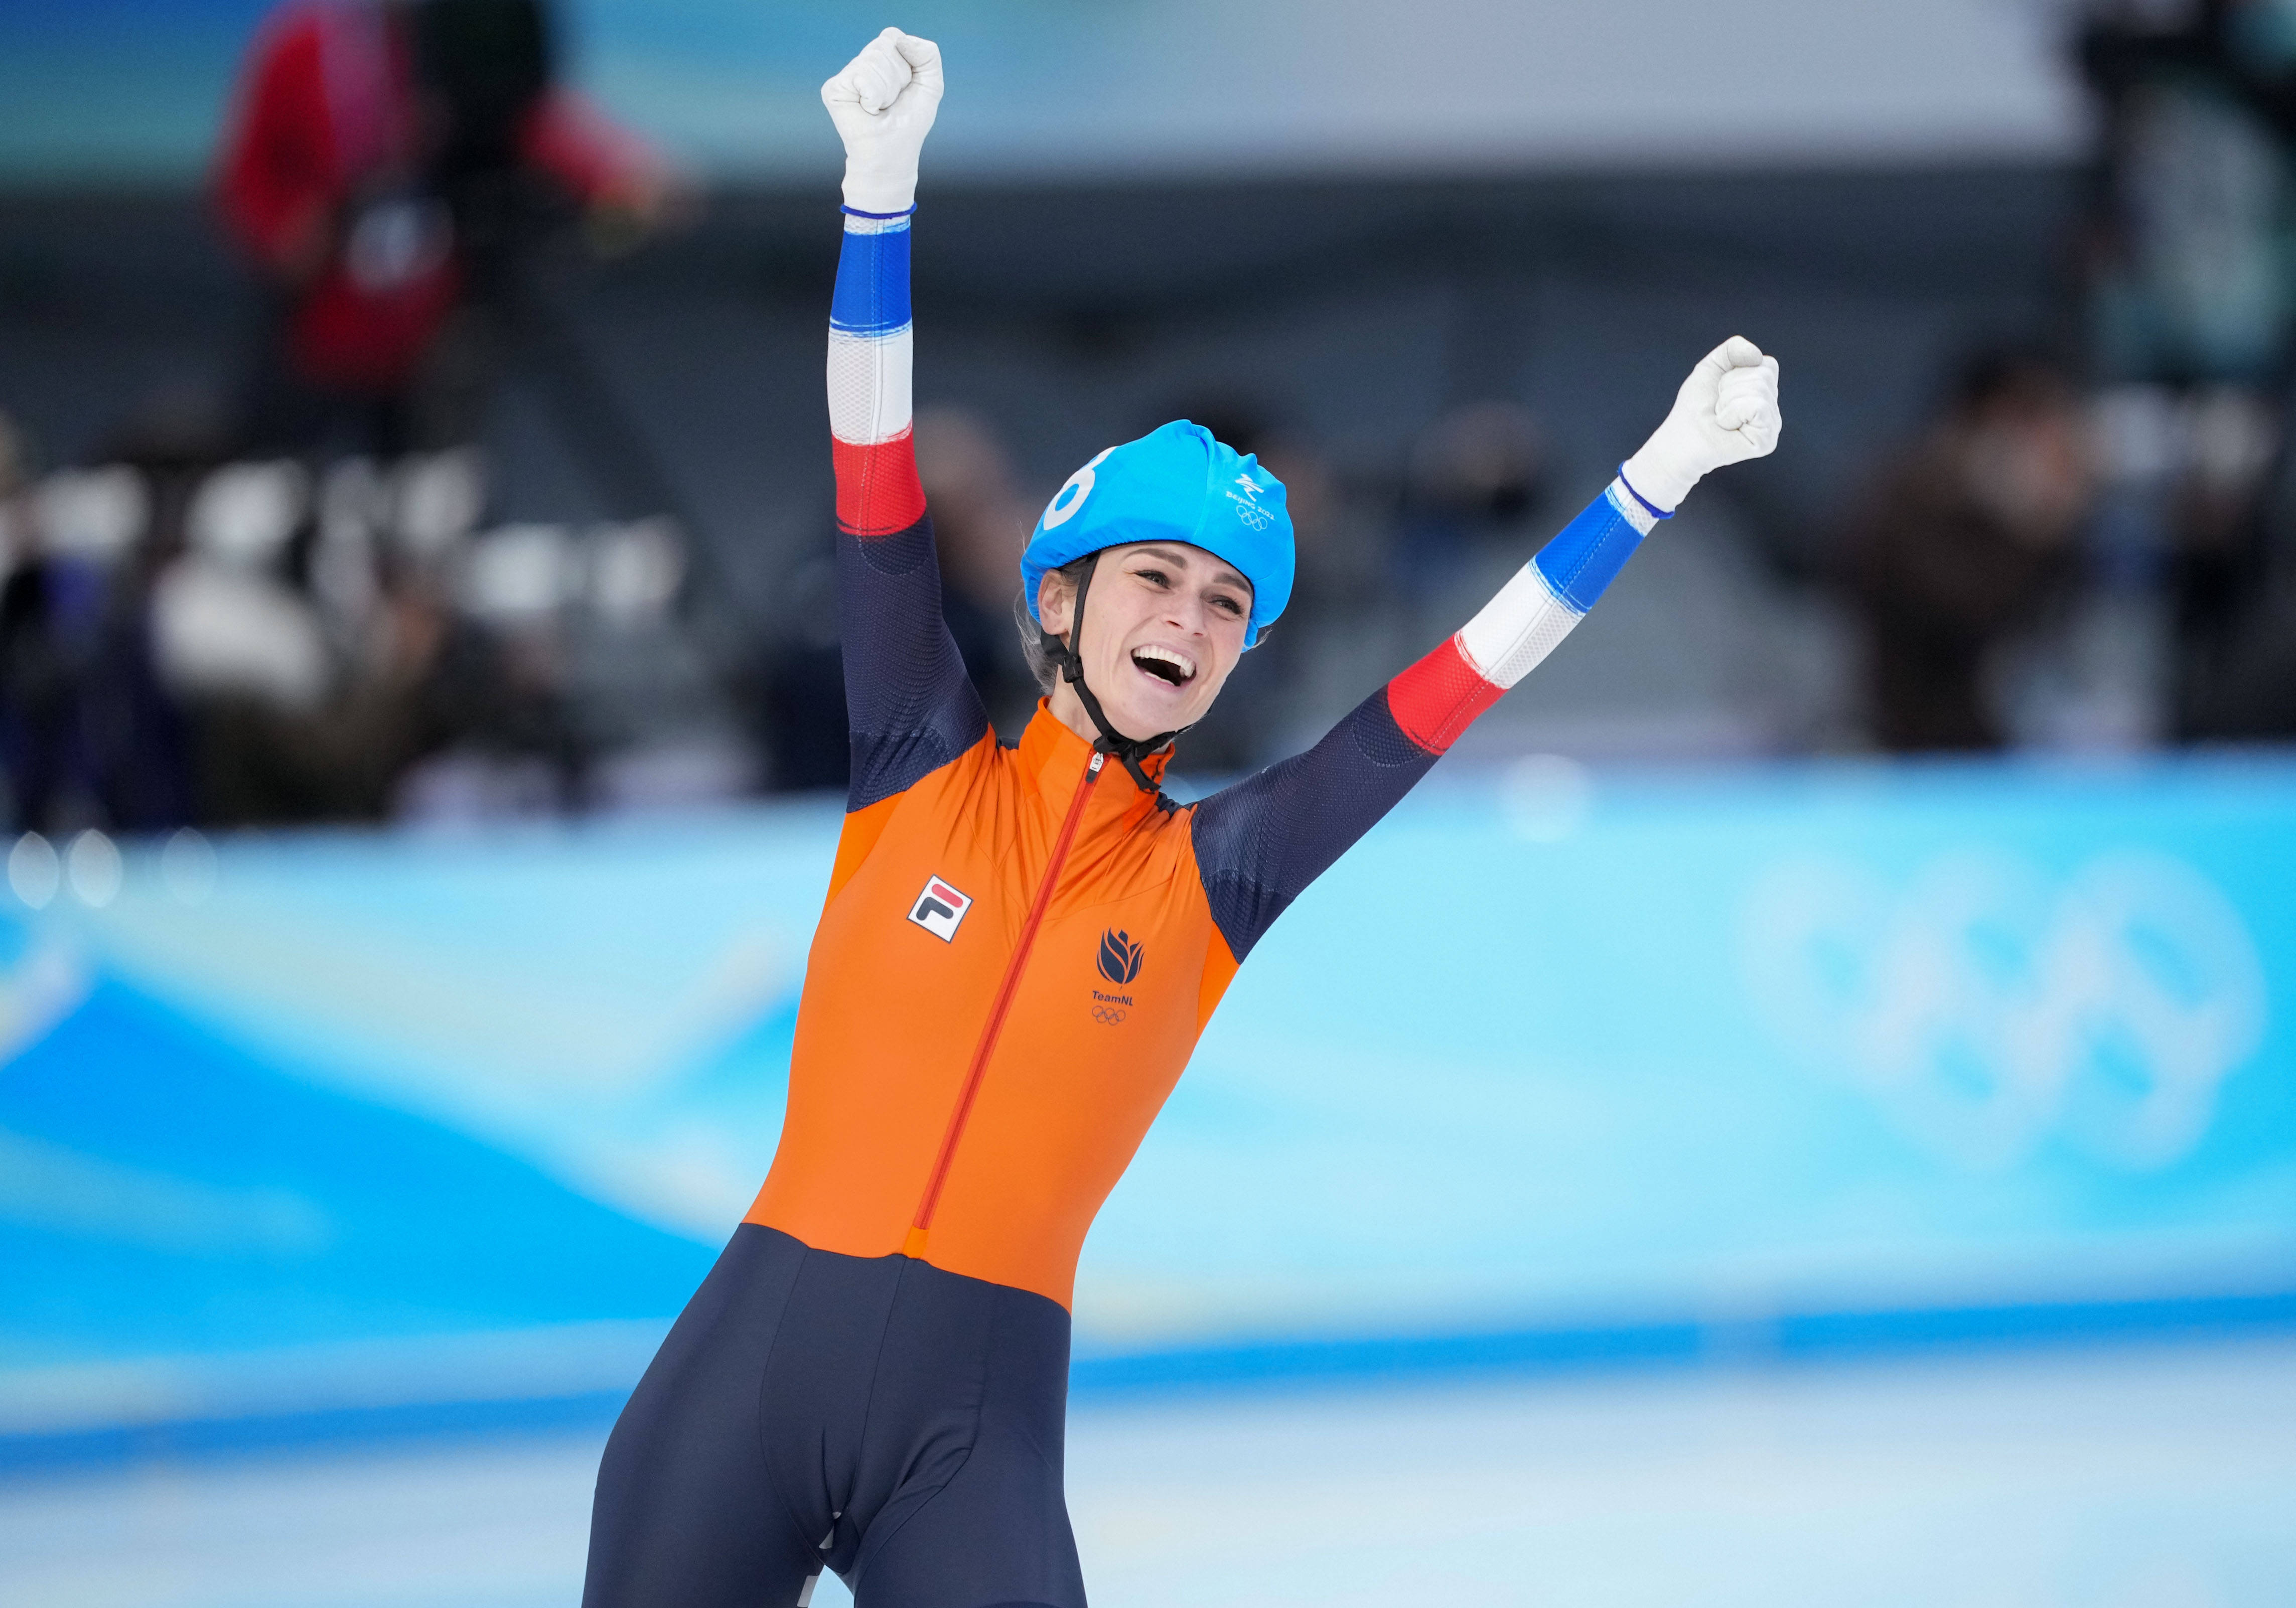 速度滑冰——女子集体出发决赛:荷兰选手夺冠